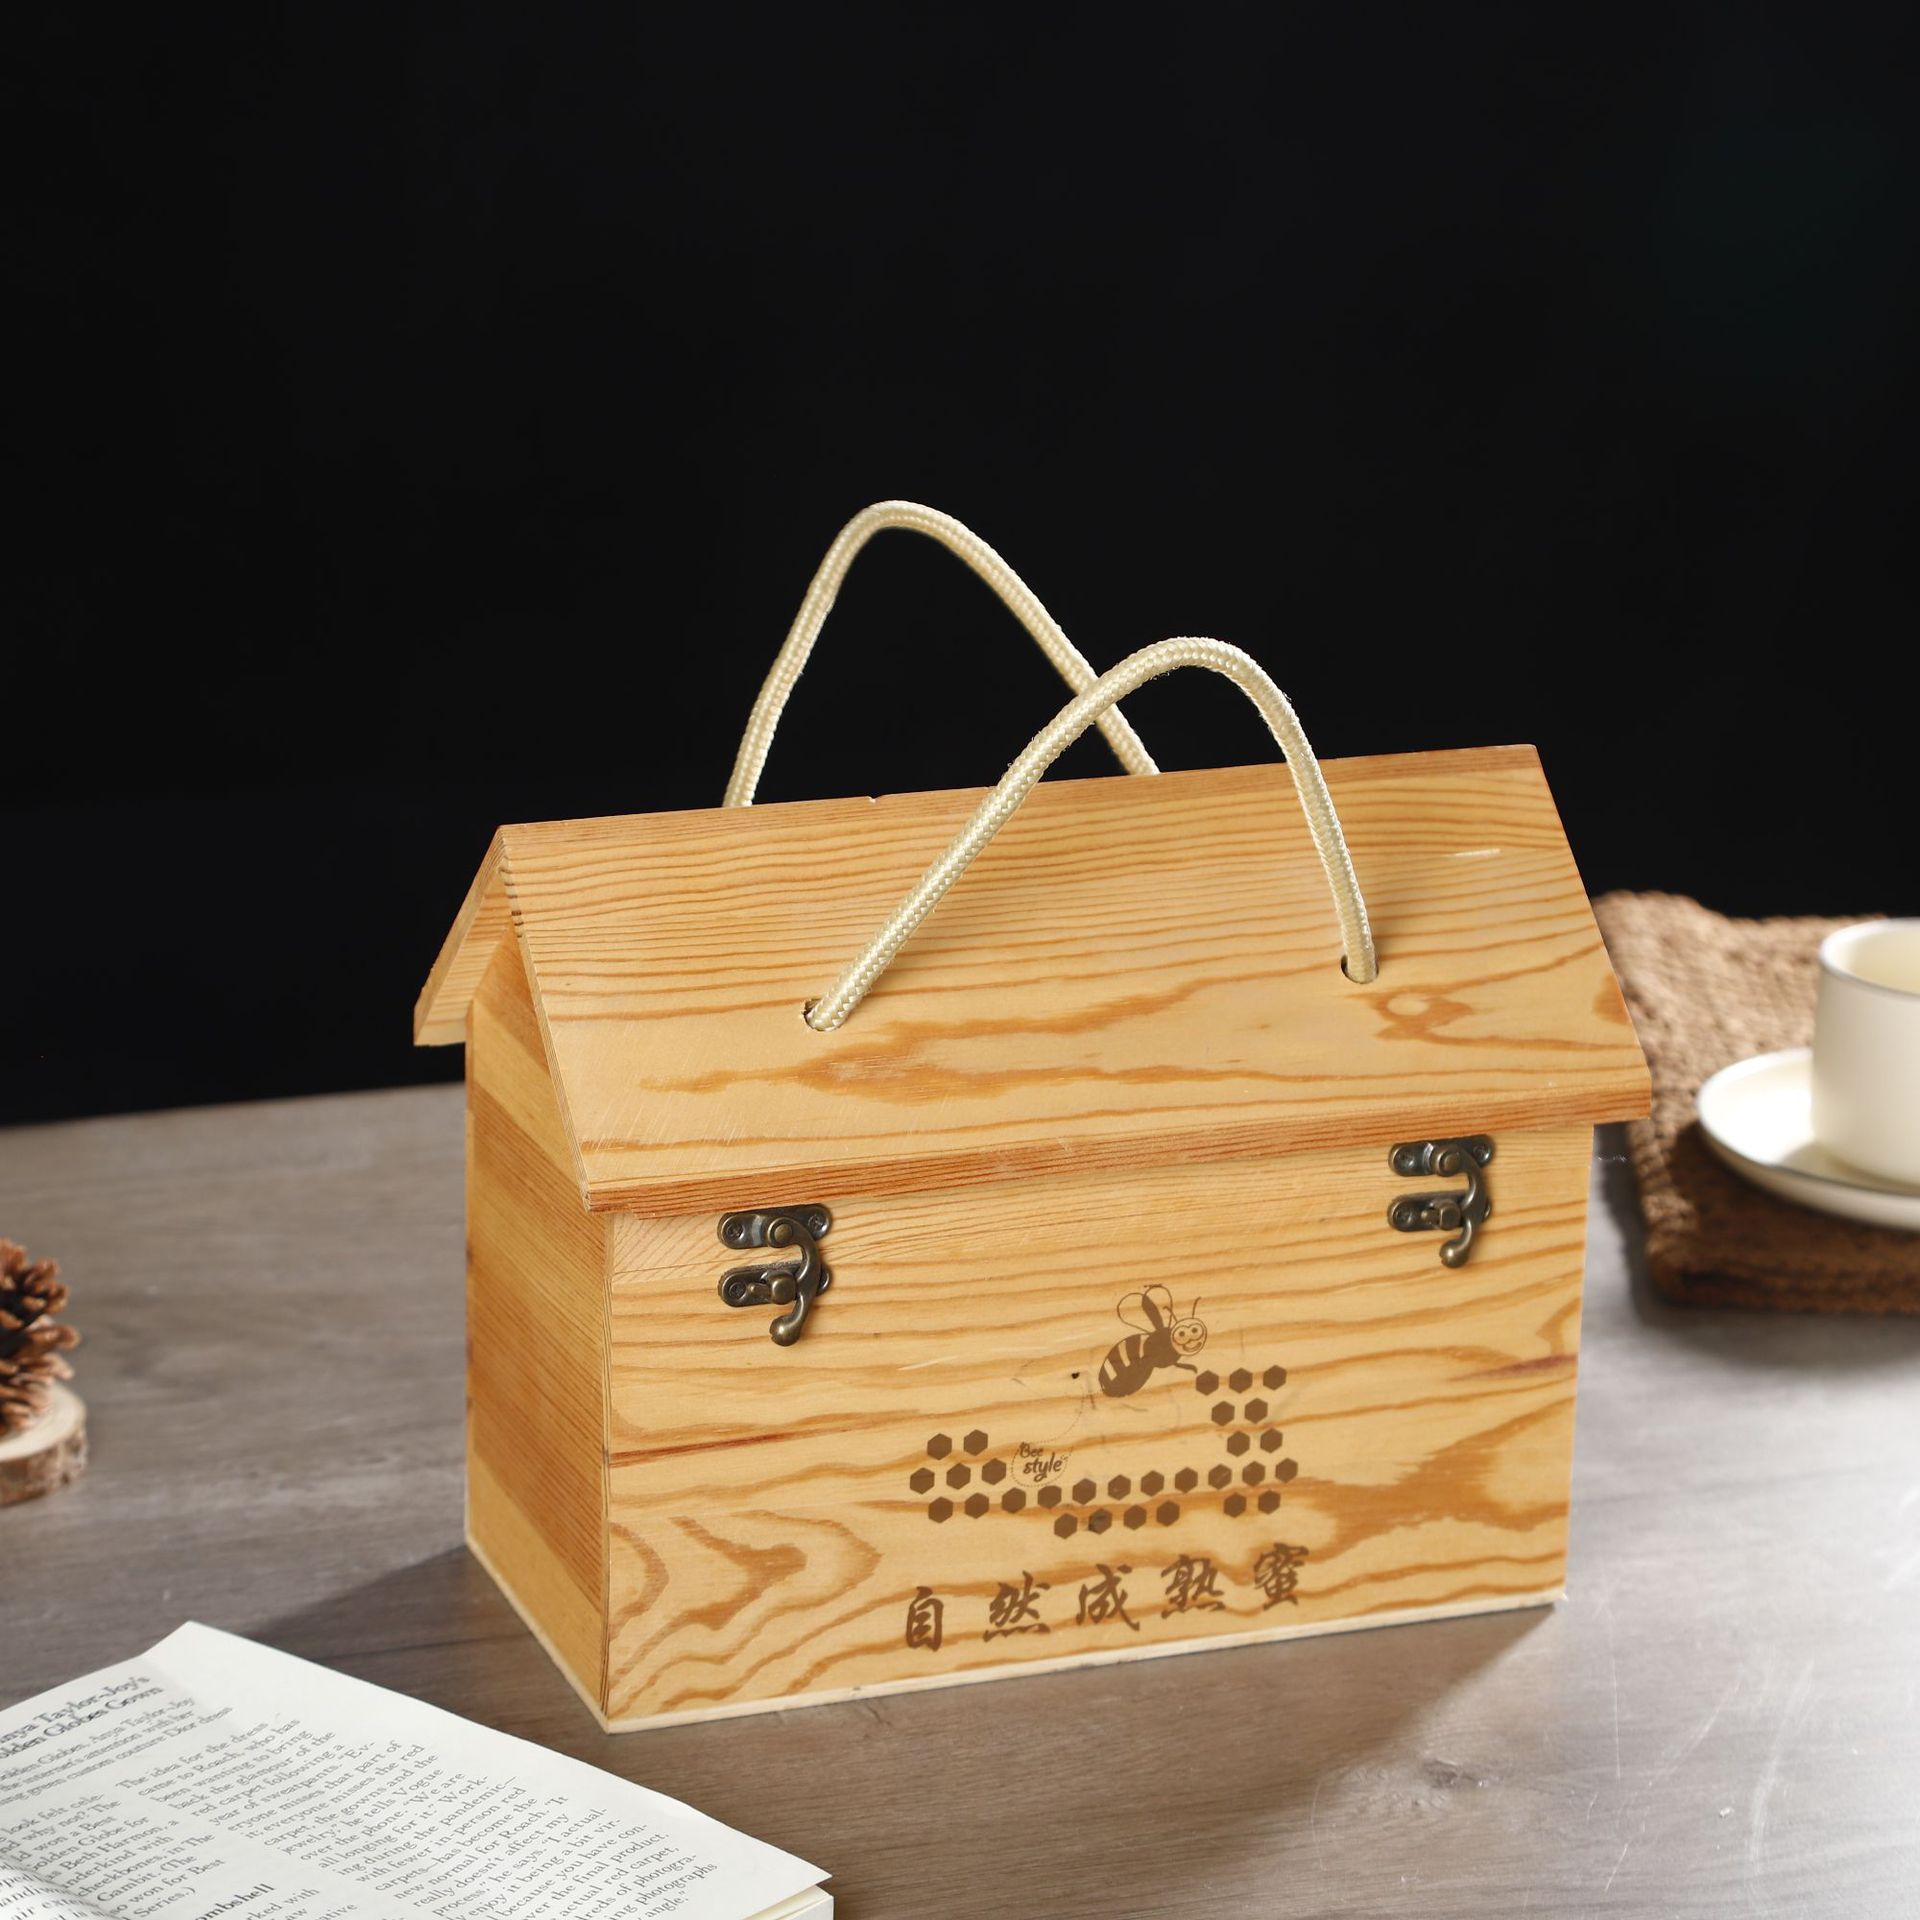 通用蜂蜜包装盒木制蜂蜜礼盒 蜂巢蜜礼盒包装 木质包装盒